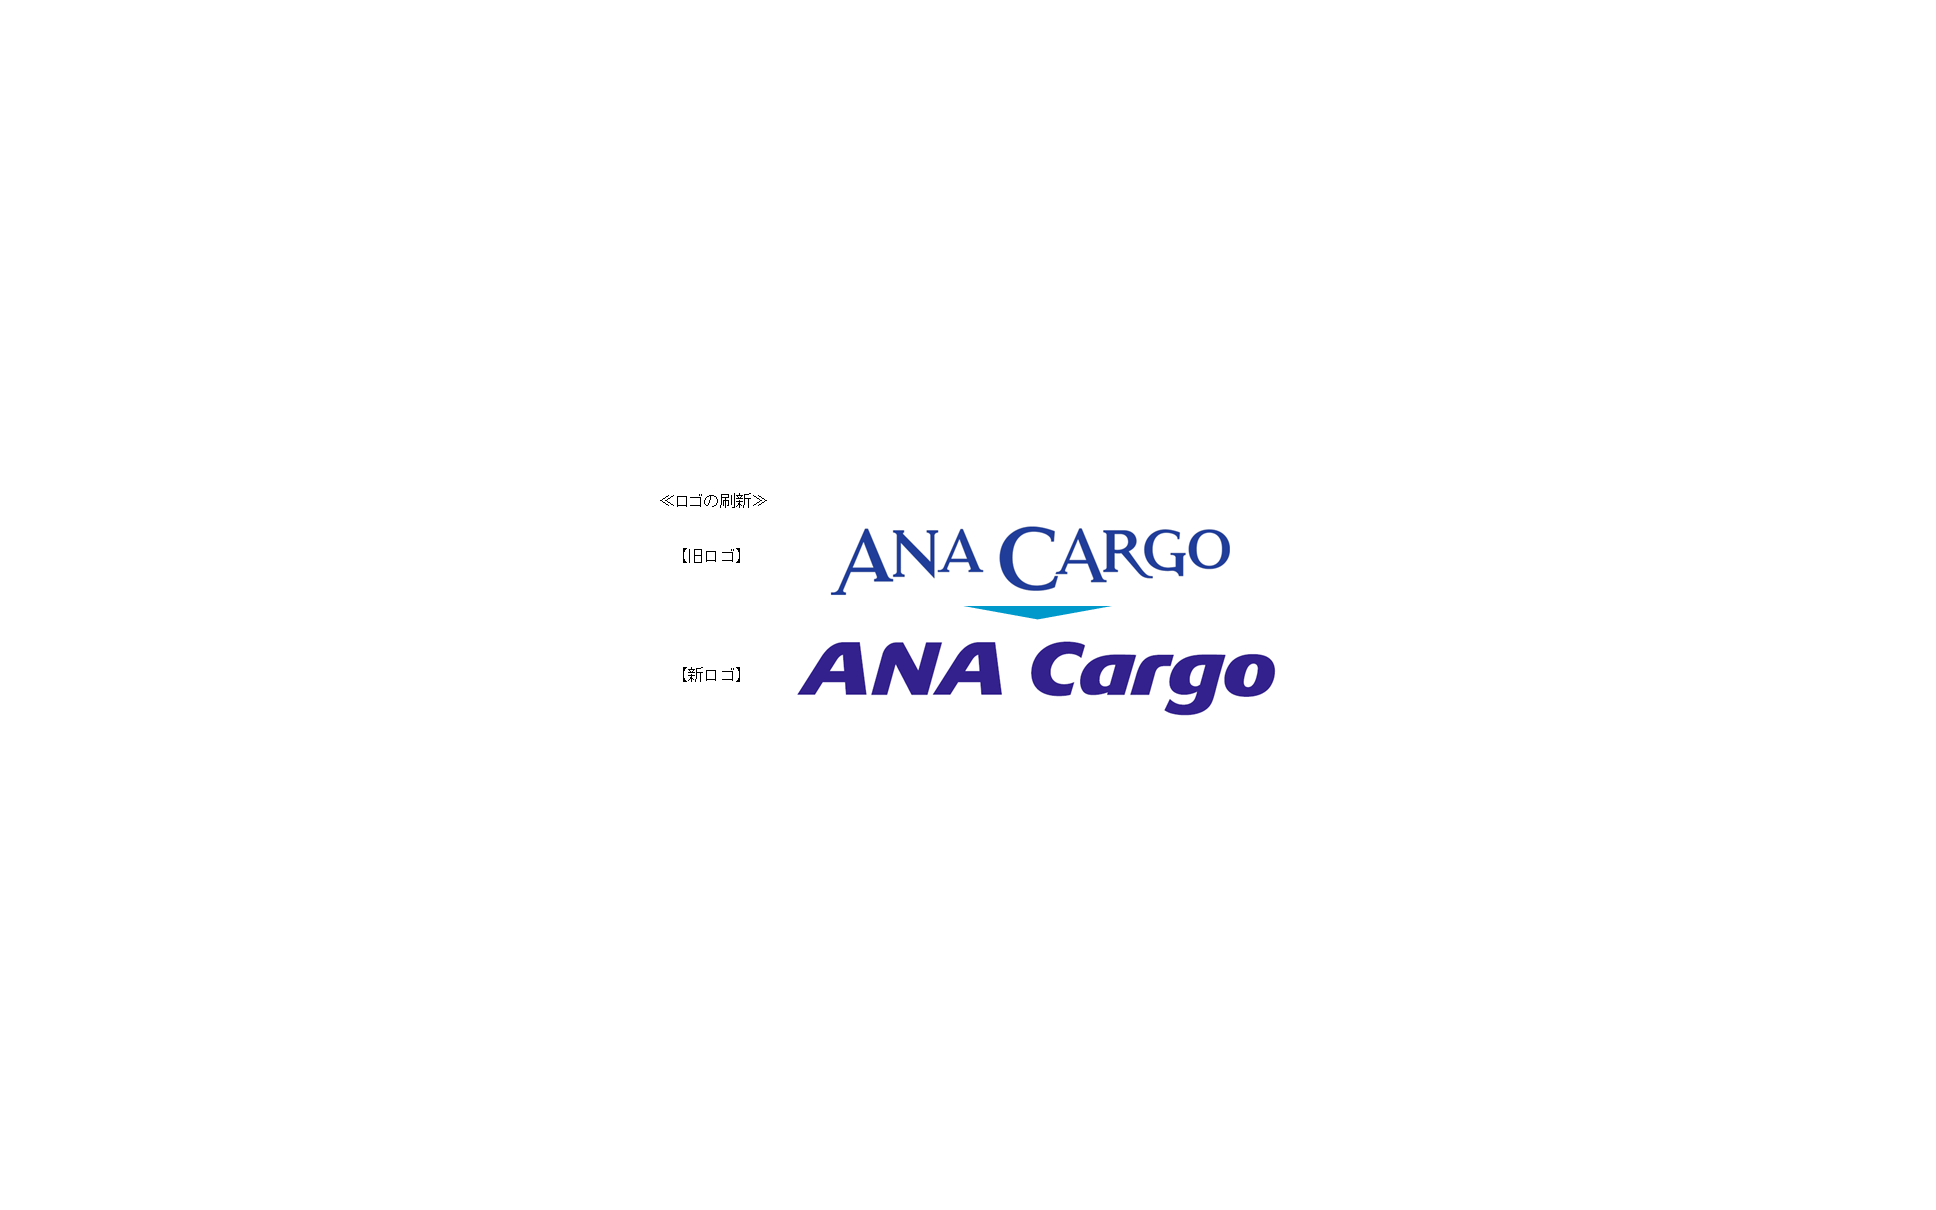 Anaホールディングス 航空貨物事業会社 Anaカーゴ が4月1日から営業開始 ロゴも一新 1枚目の写真 画像 レスポンス Response Jp